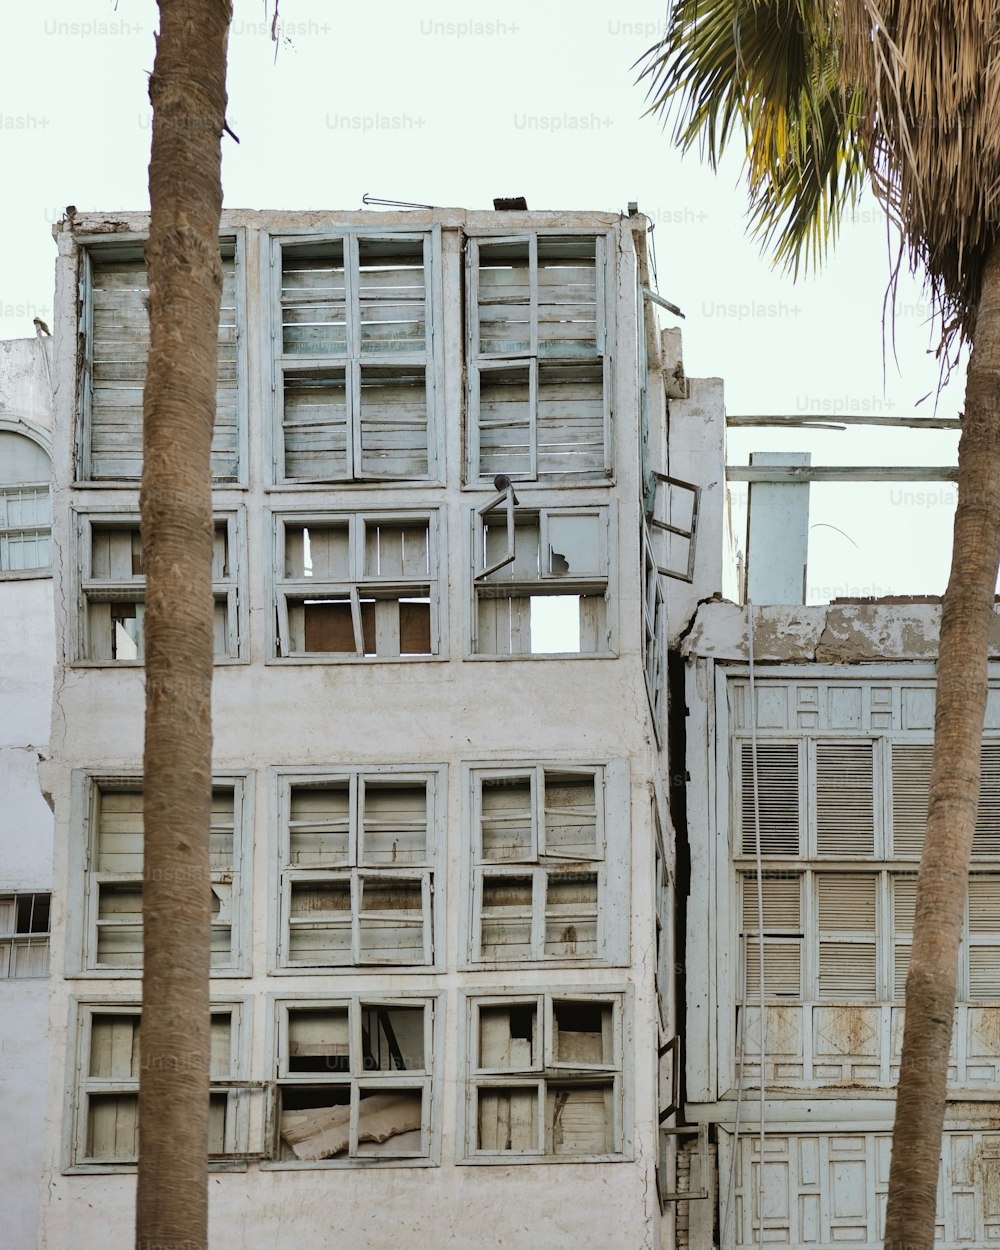 Un vieux bâtiment aux fenêtres brisées et aux palmiers